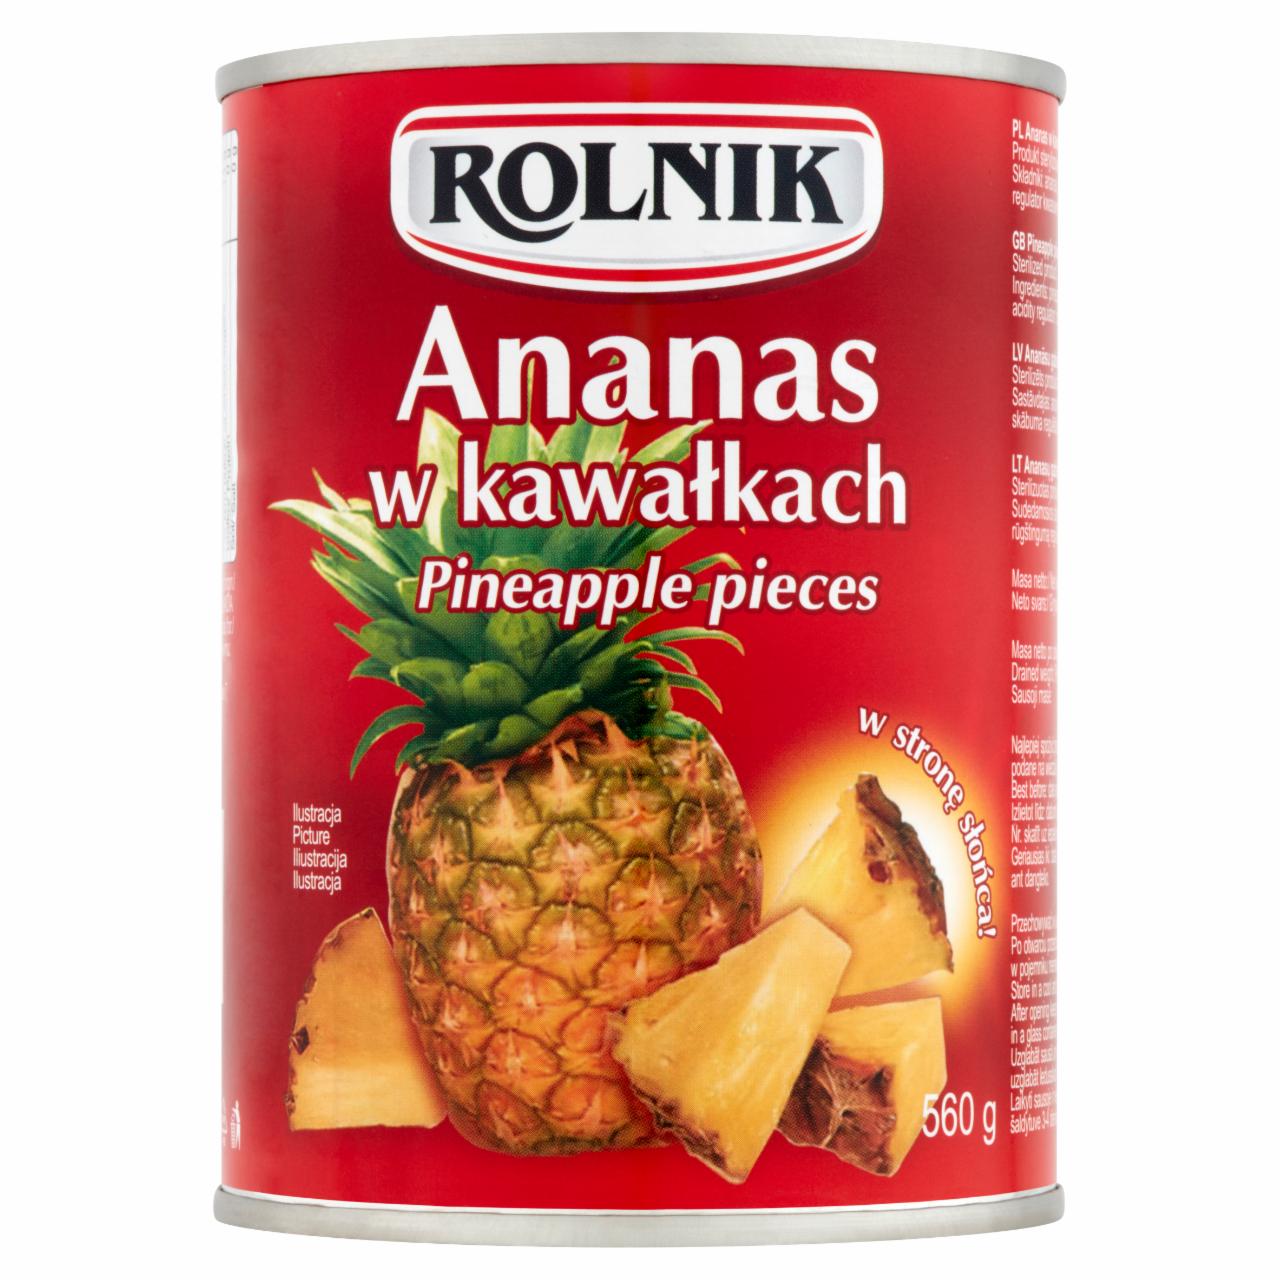 Zdjęcia - Rolnik Ananas w kawałkach 560 g